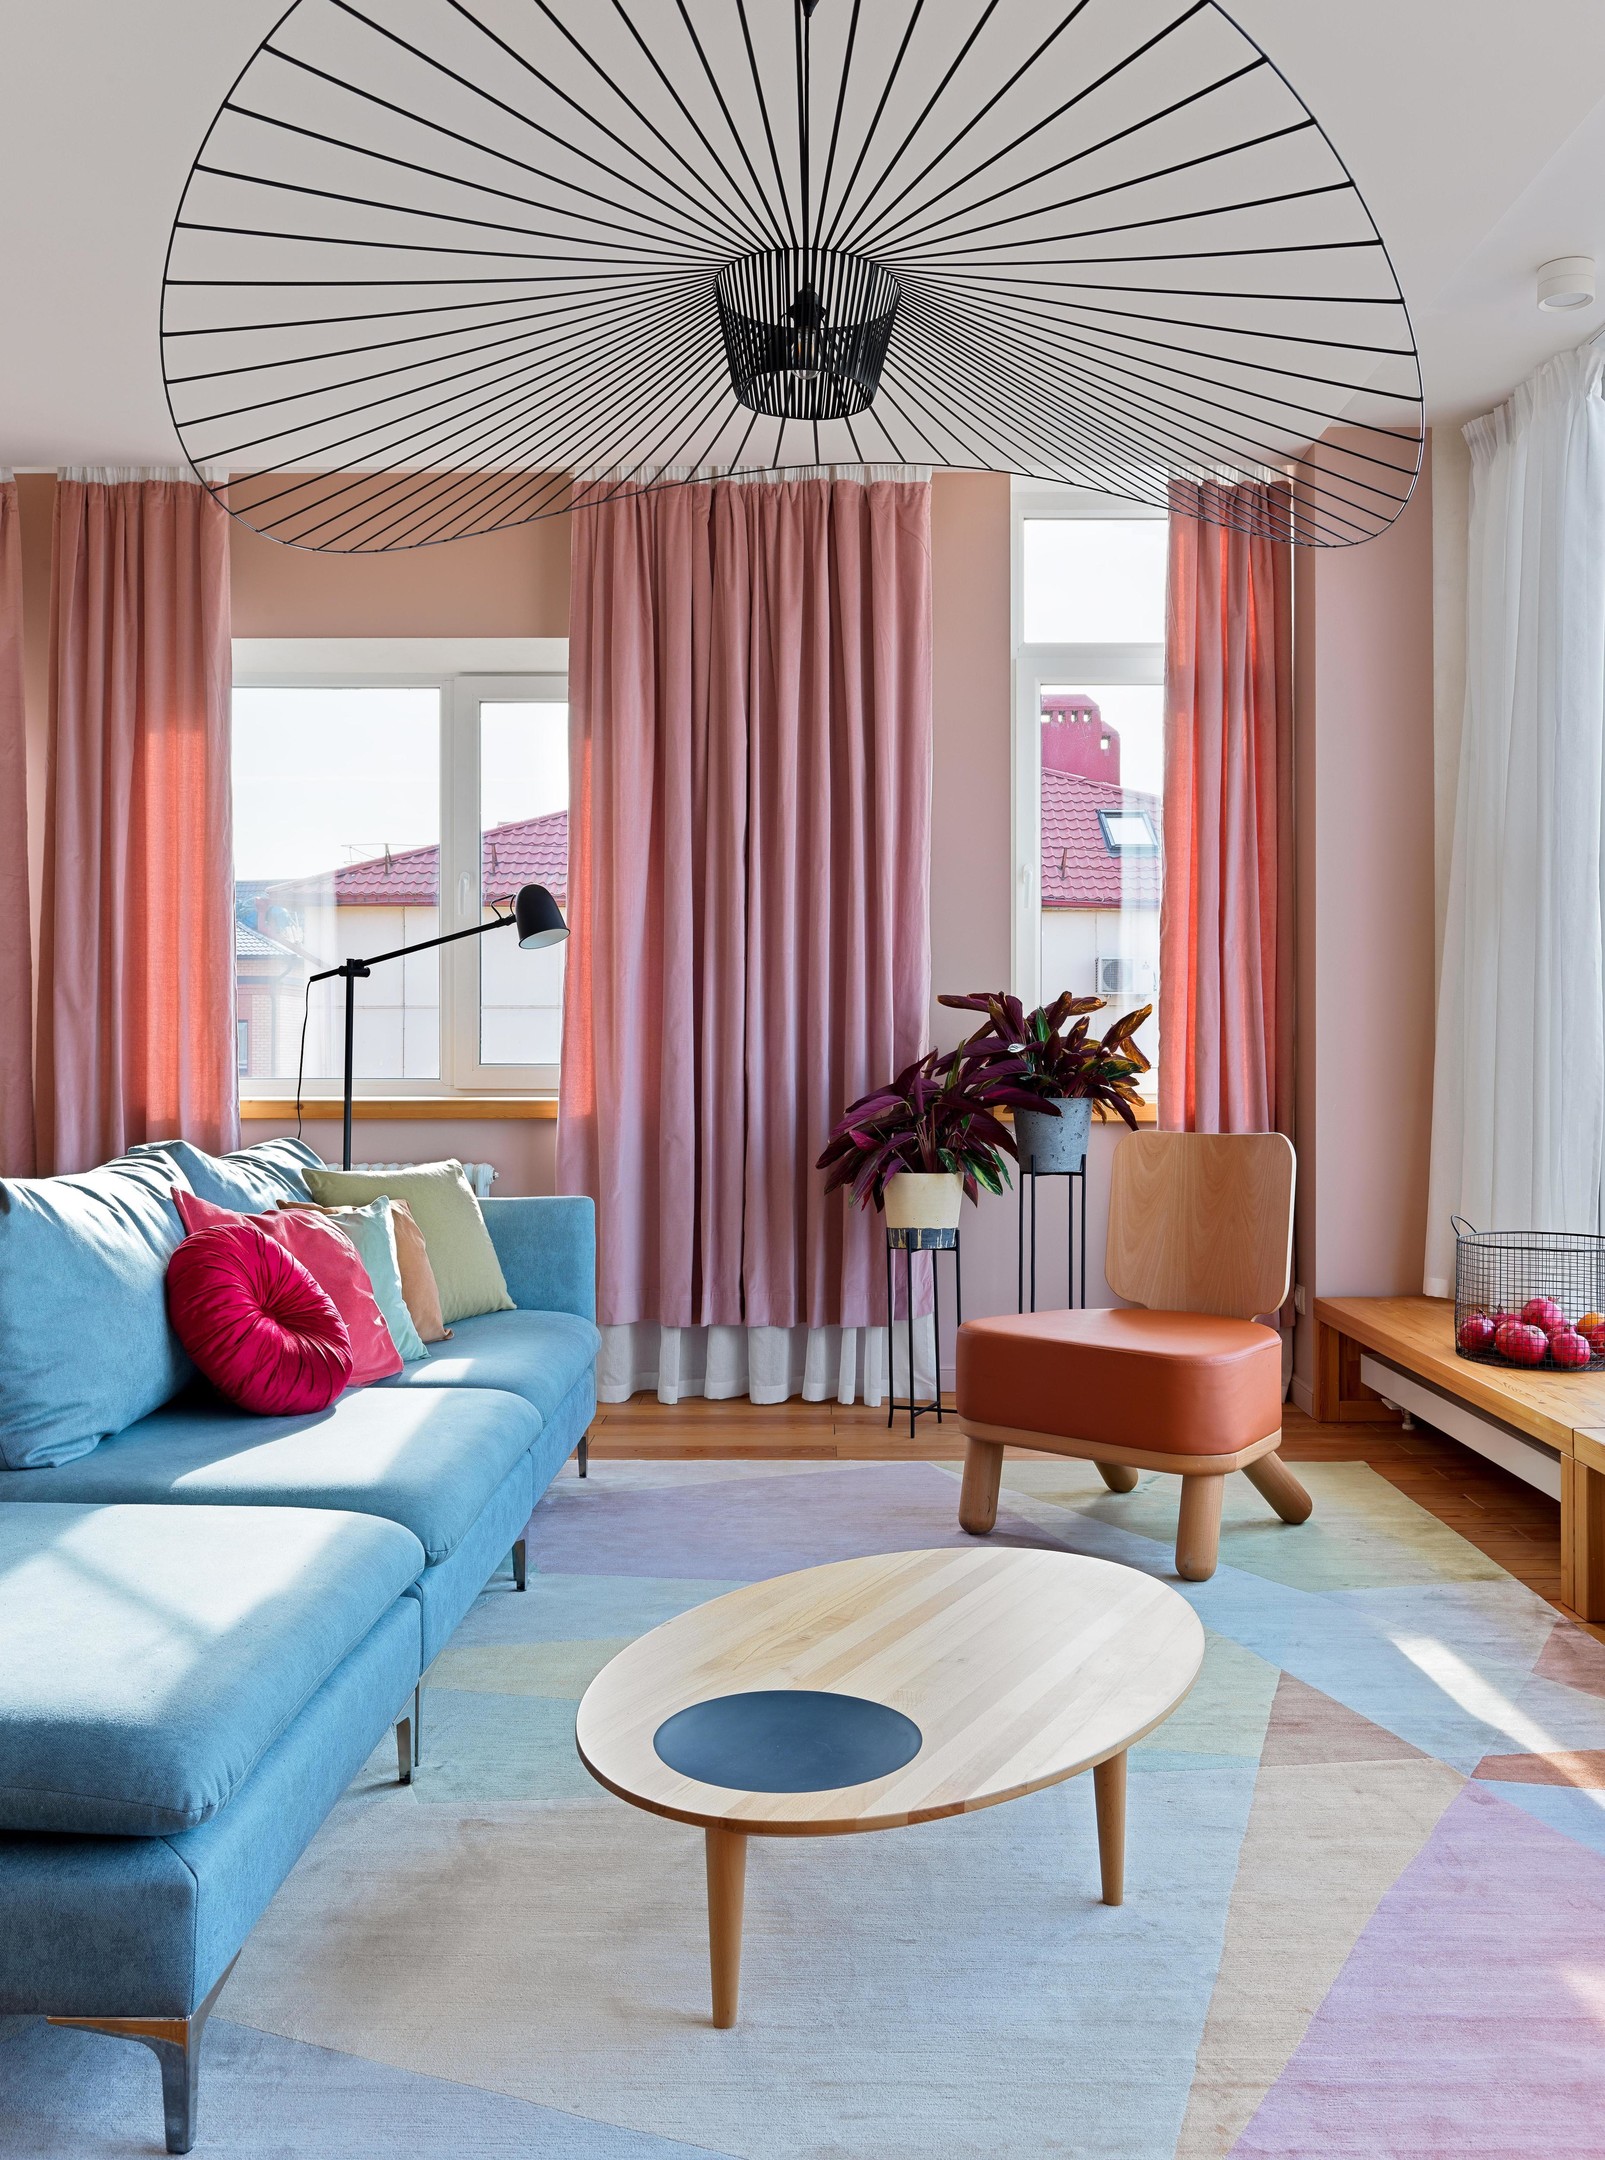 Phòng khách xinh đẹp với bộ ghế sofa màu xanh lam nhạt kết hợp với thảm trải sàn và những chiếc gối tựa nhiều màu sắc. Phía cửa sổ, rèm che sắc hồng ngọt ngào hòa quyện cùng màu nắng ấm áp vô cùng.